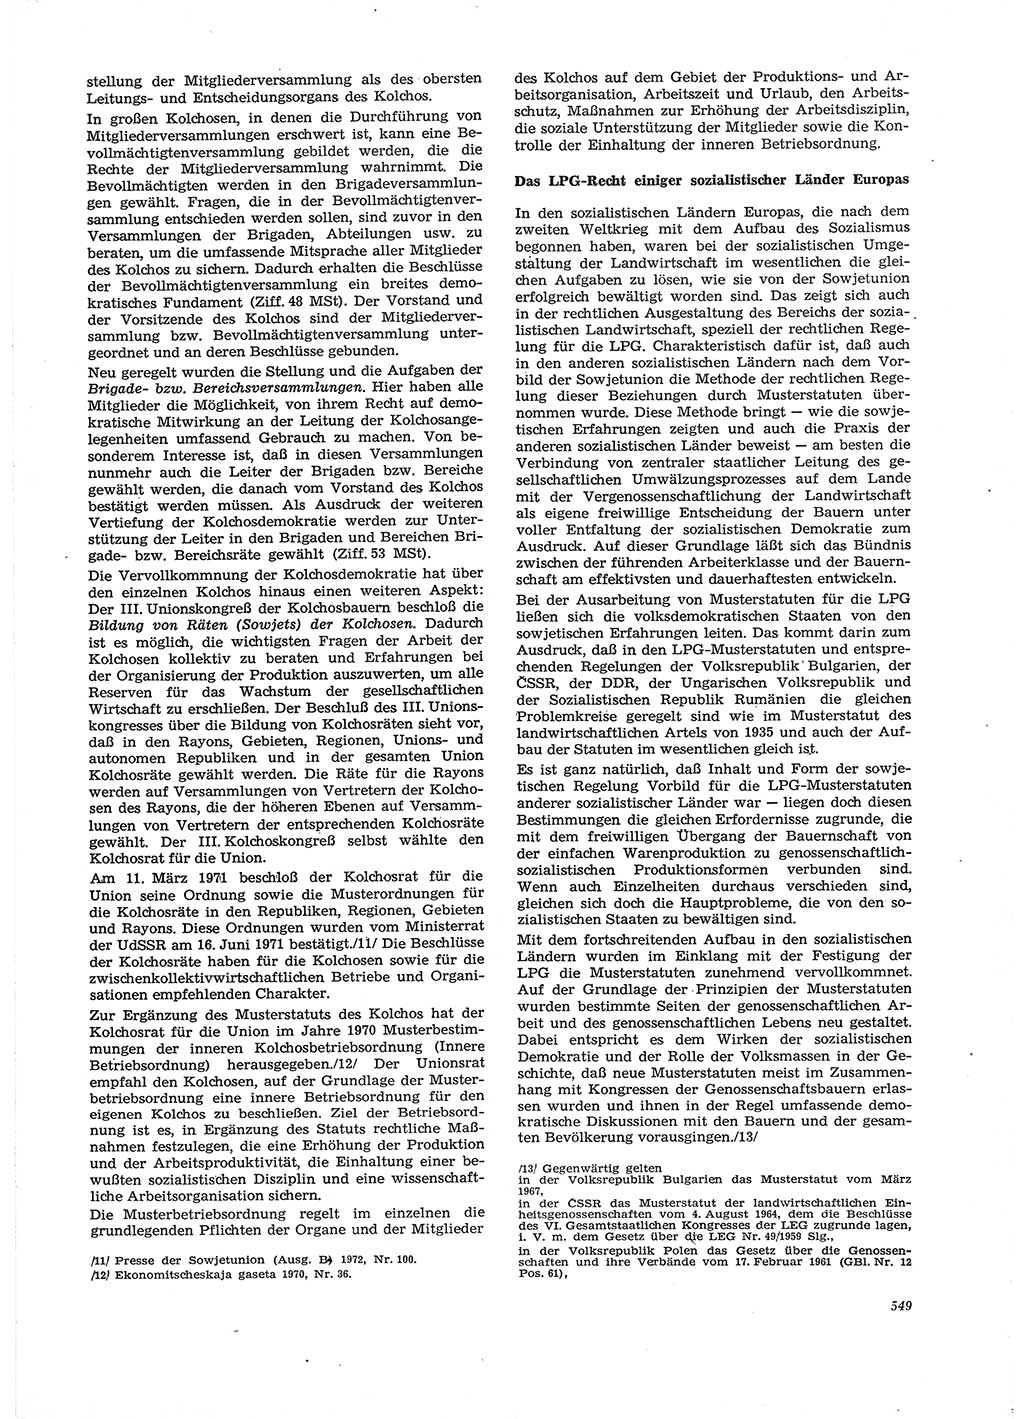 Neue Justiz (NJ), Zeitschrift für Recht und Rechtswissenschaft [Deutsche Demokratische Republik (DDR)], 29. Jahrgang 1975, Seite 549 (NJ DDR 1975, S. 549)